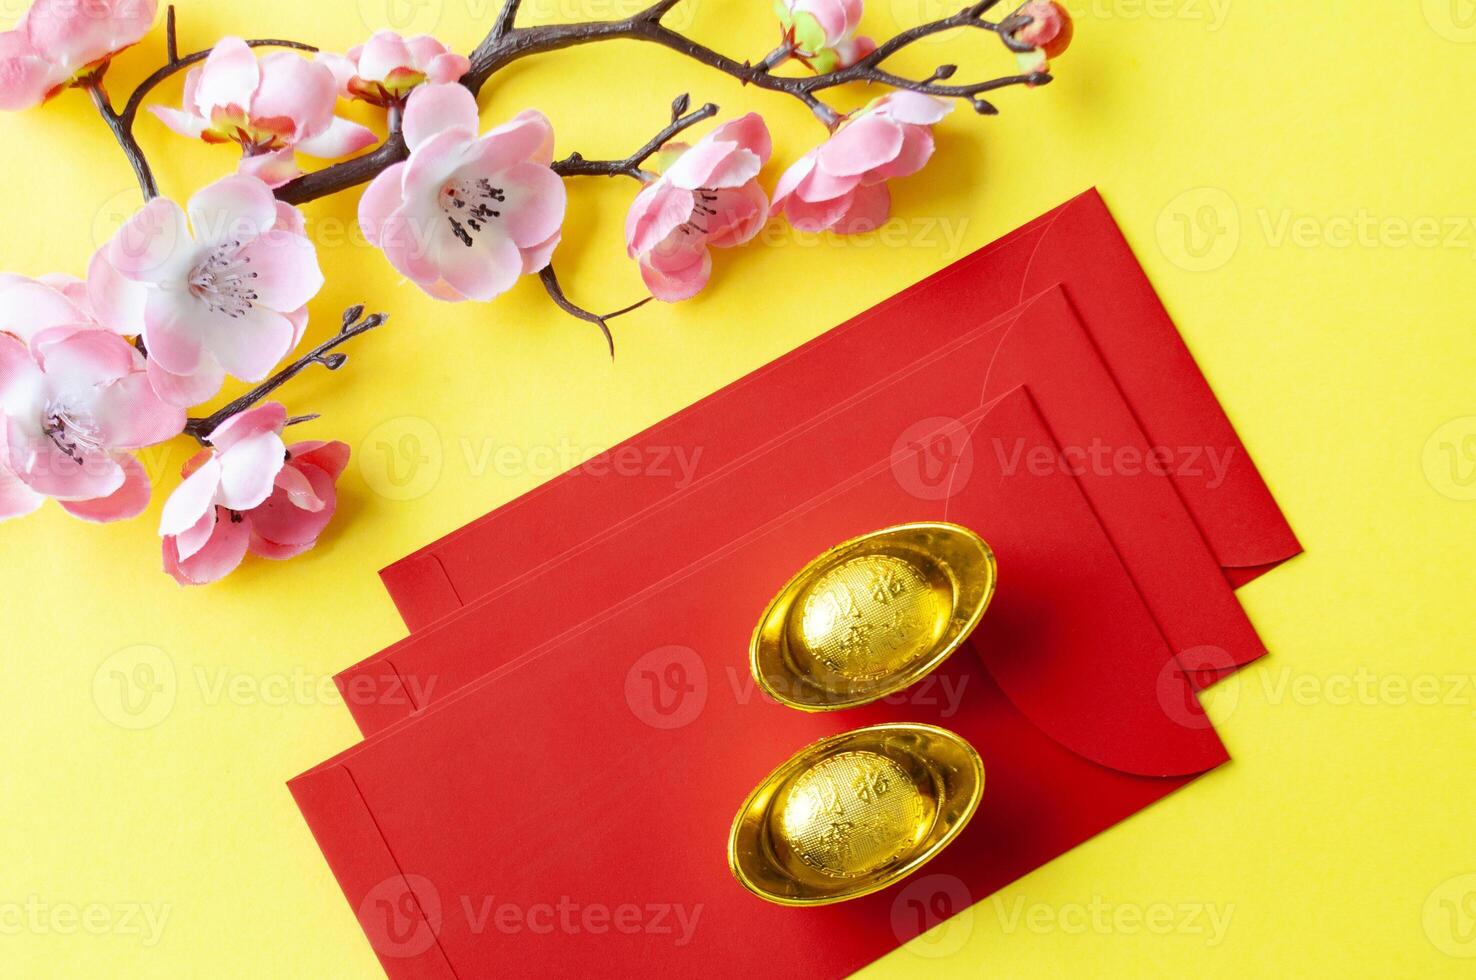 parte superior ver de chino nuevo año rojo paquetes y dorado lingotes chino nuevo año celebracion concepto foto